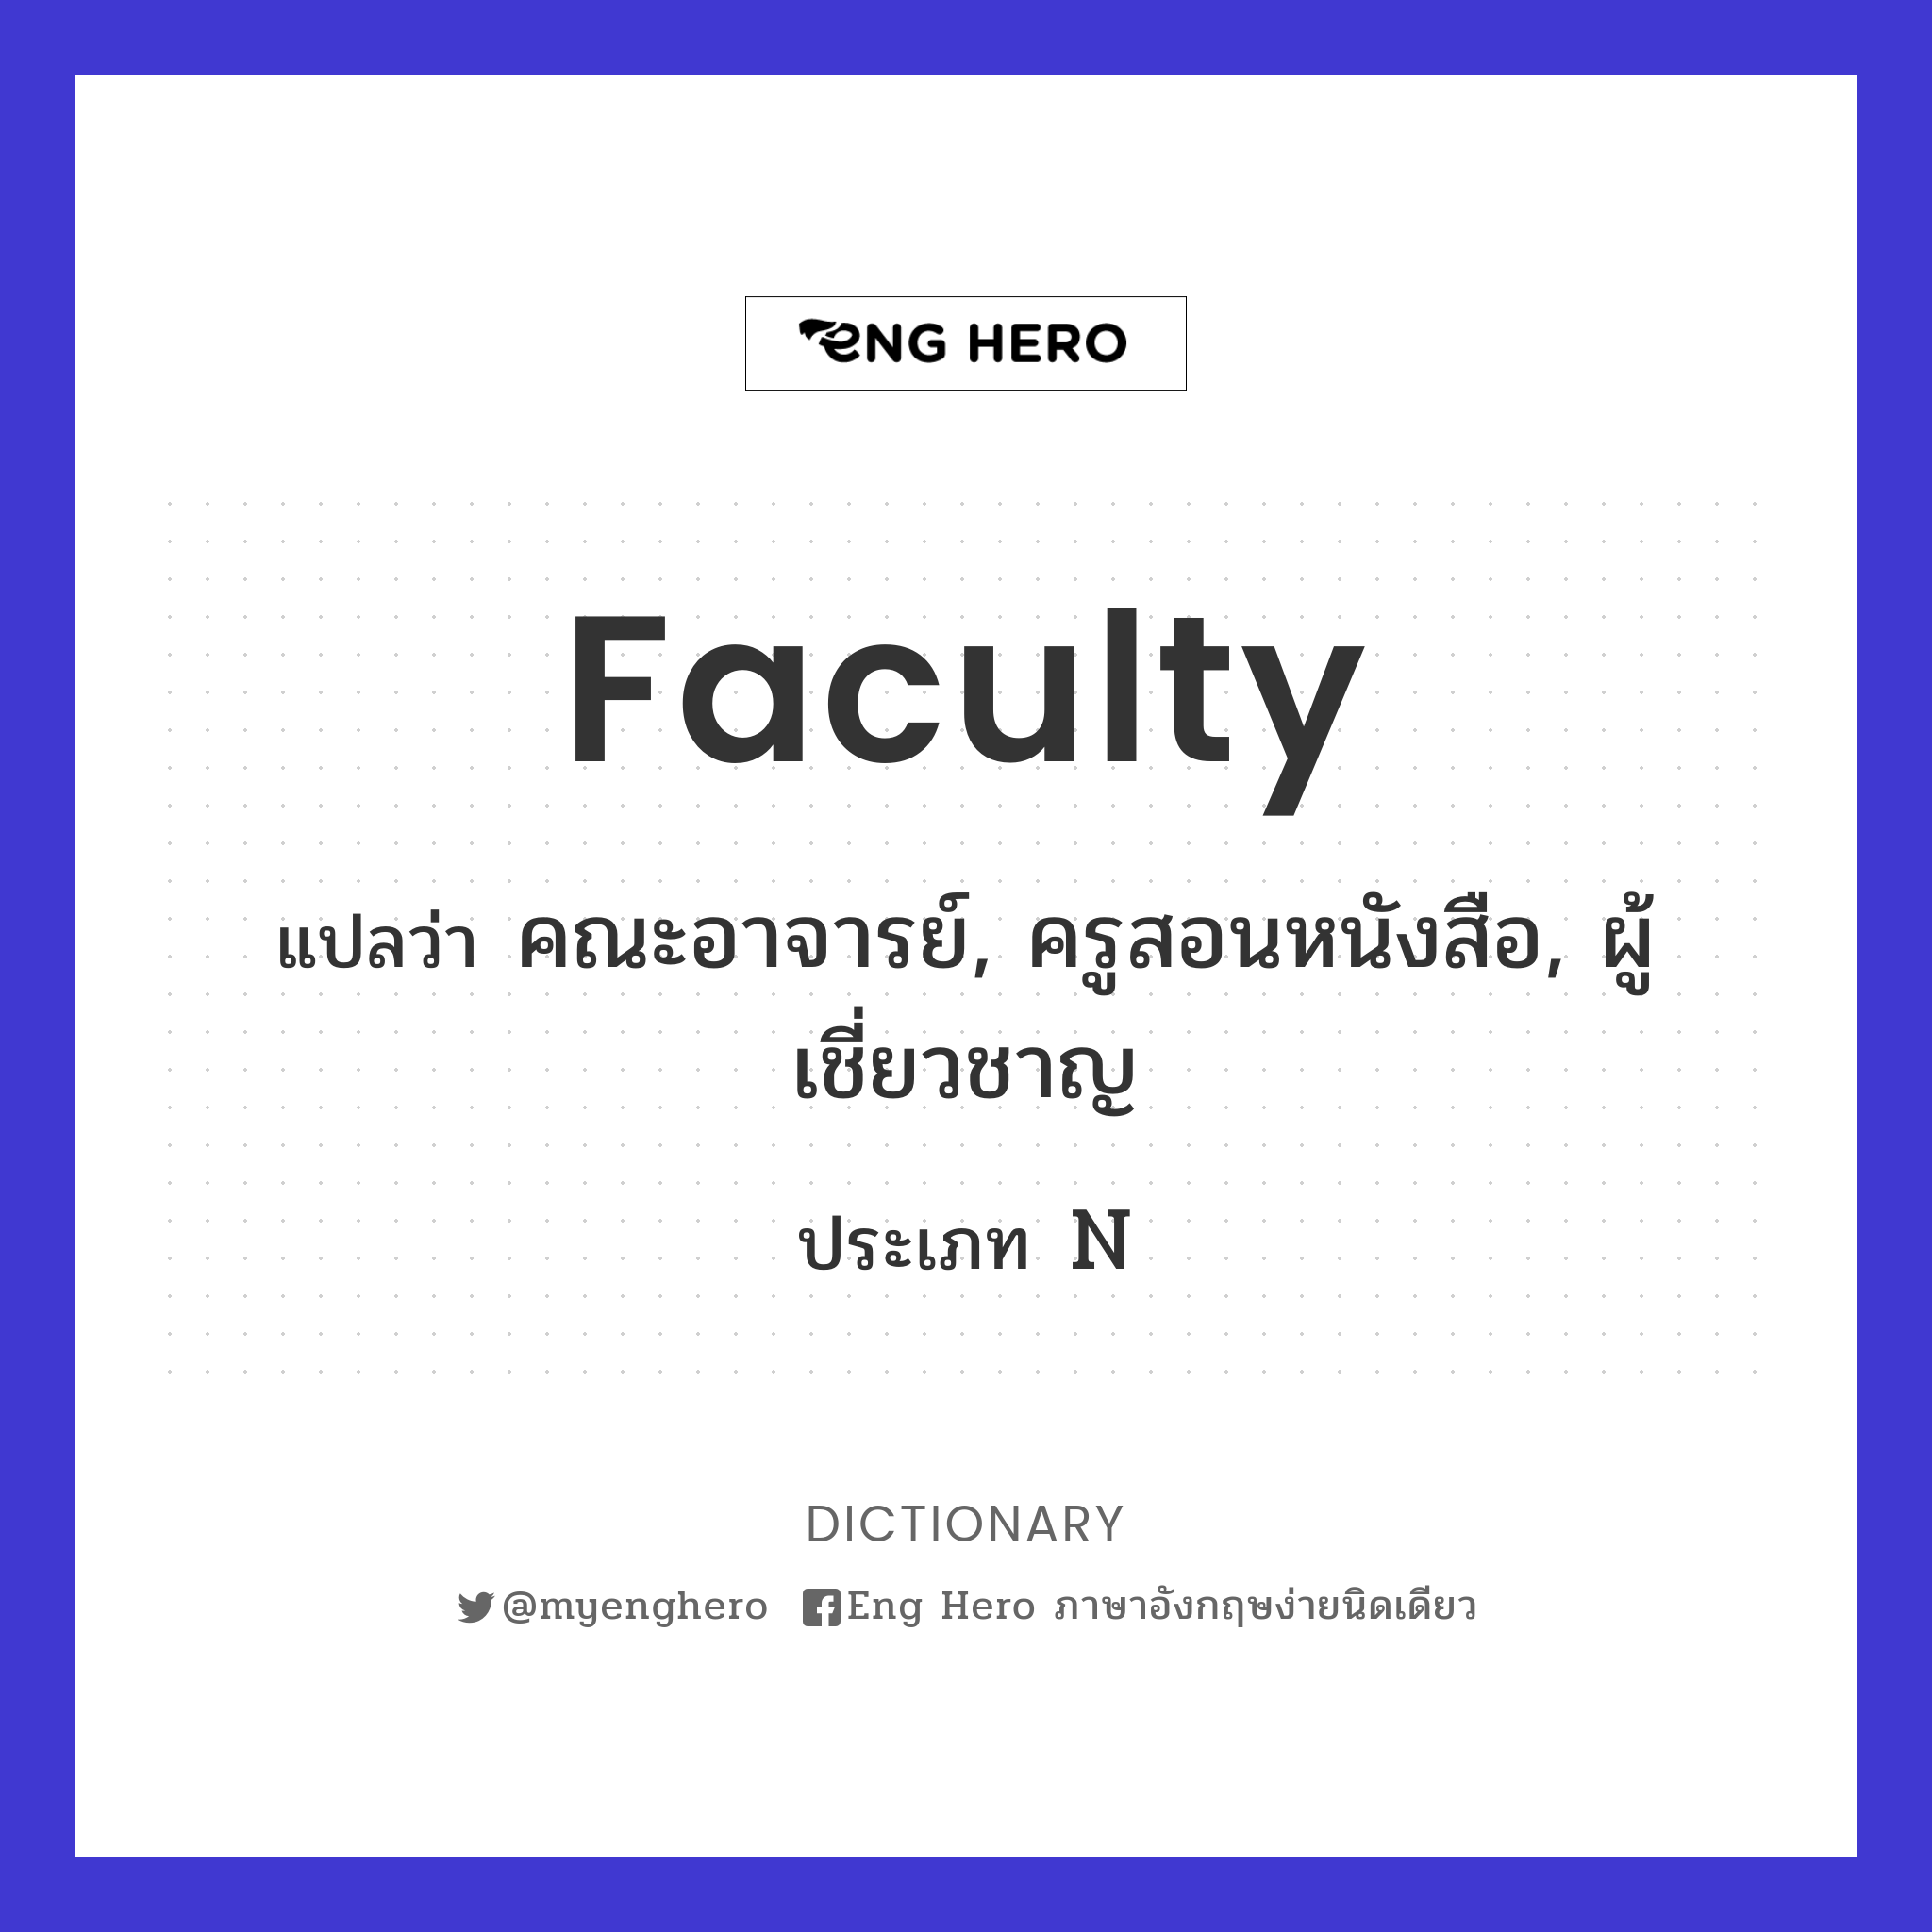 faculty